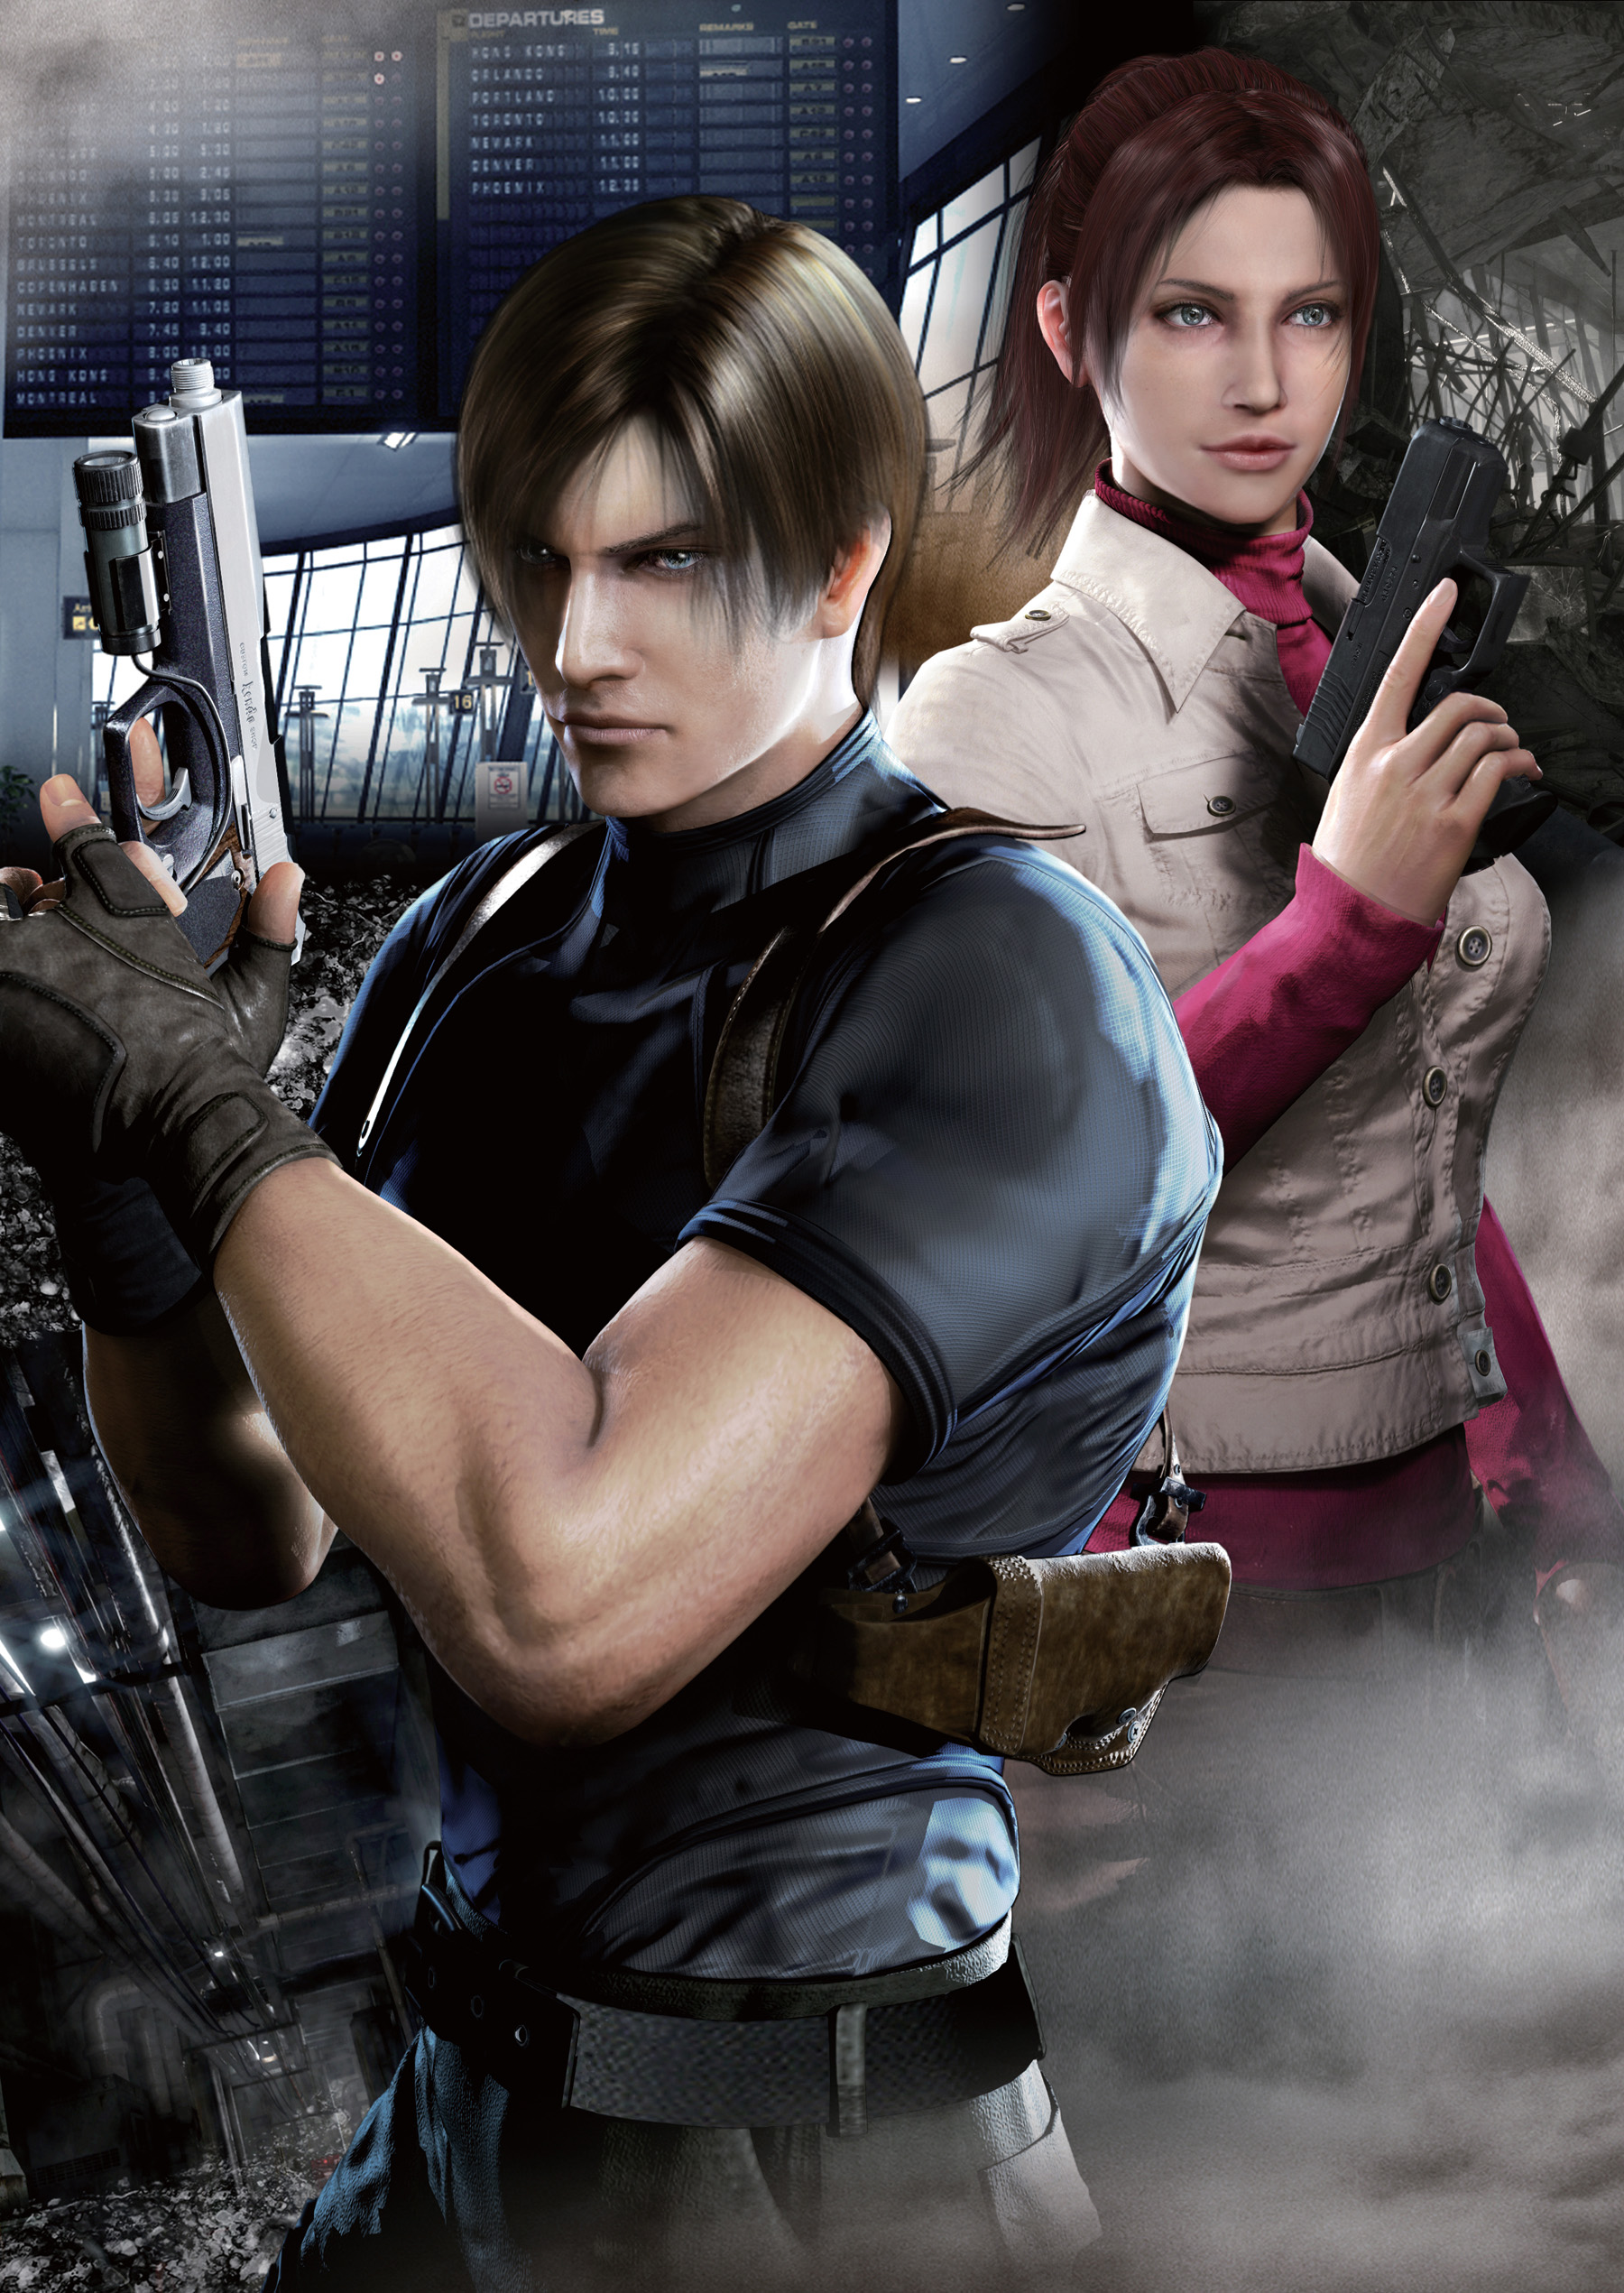 Resident Evil Code Veronica X 100% Dublado E Legendado